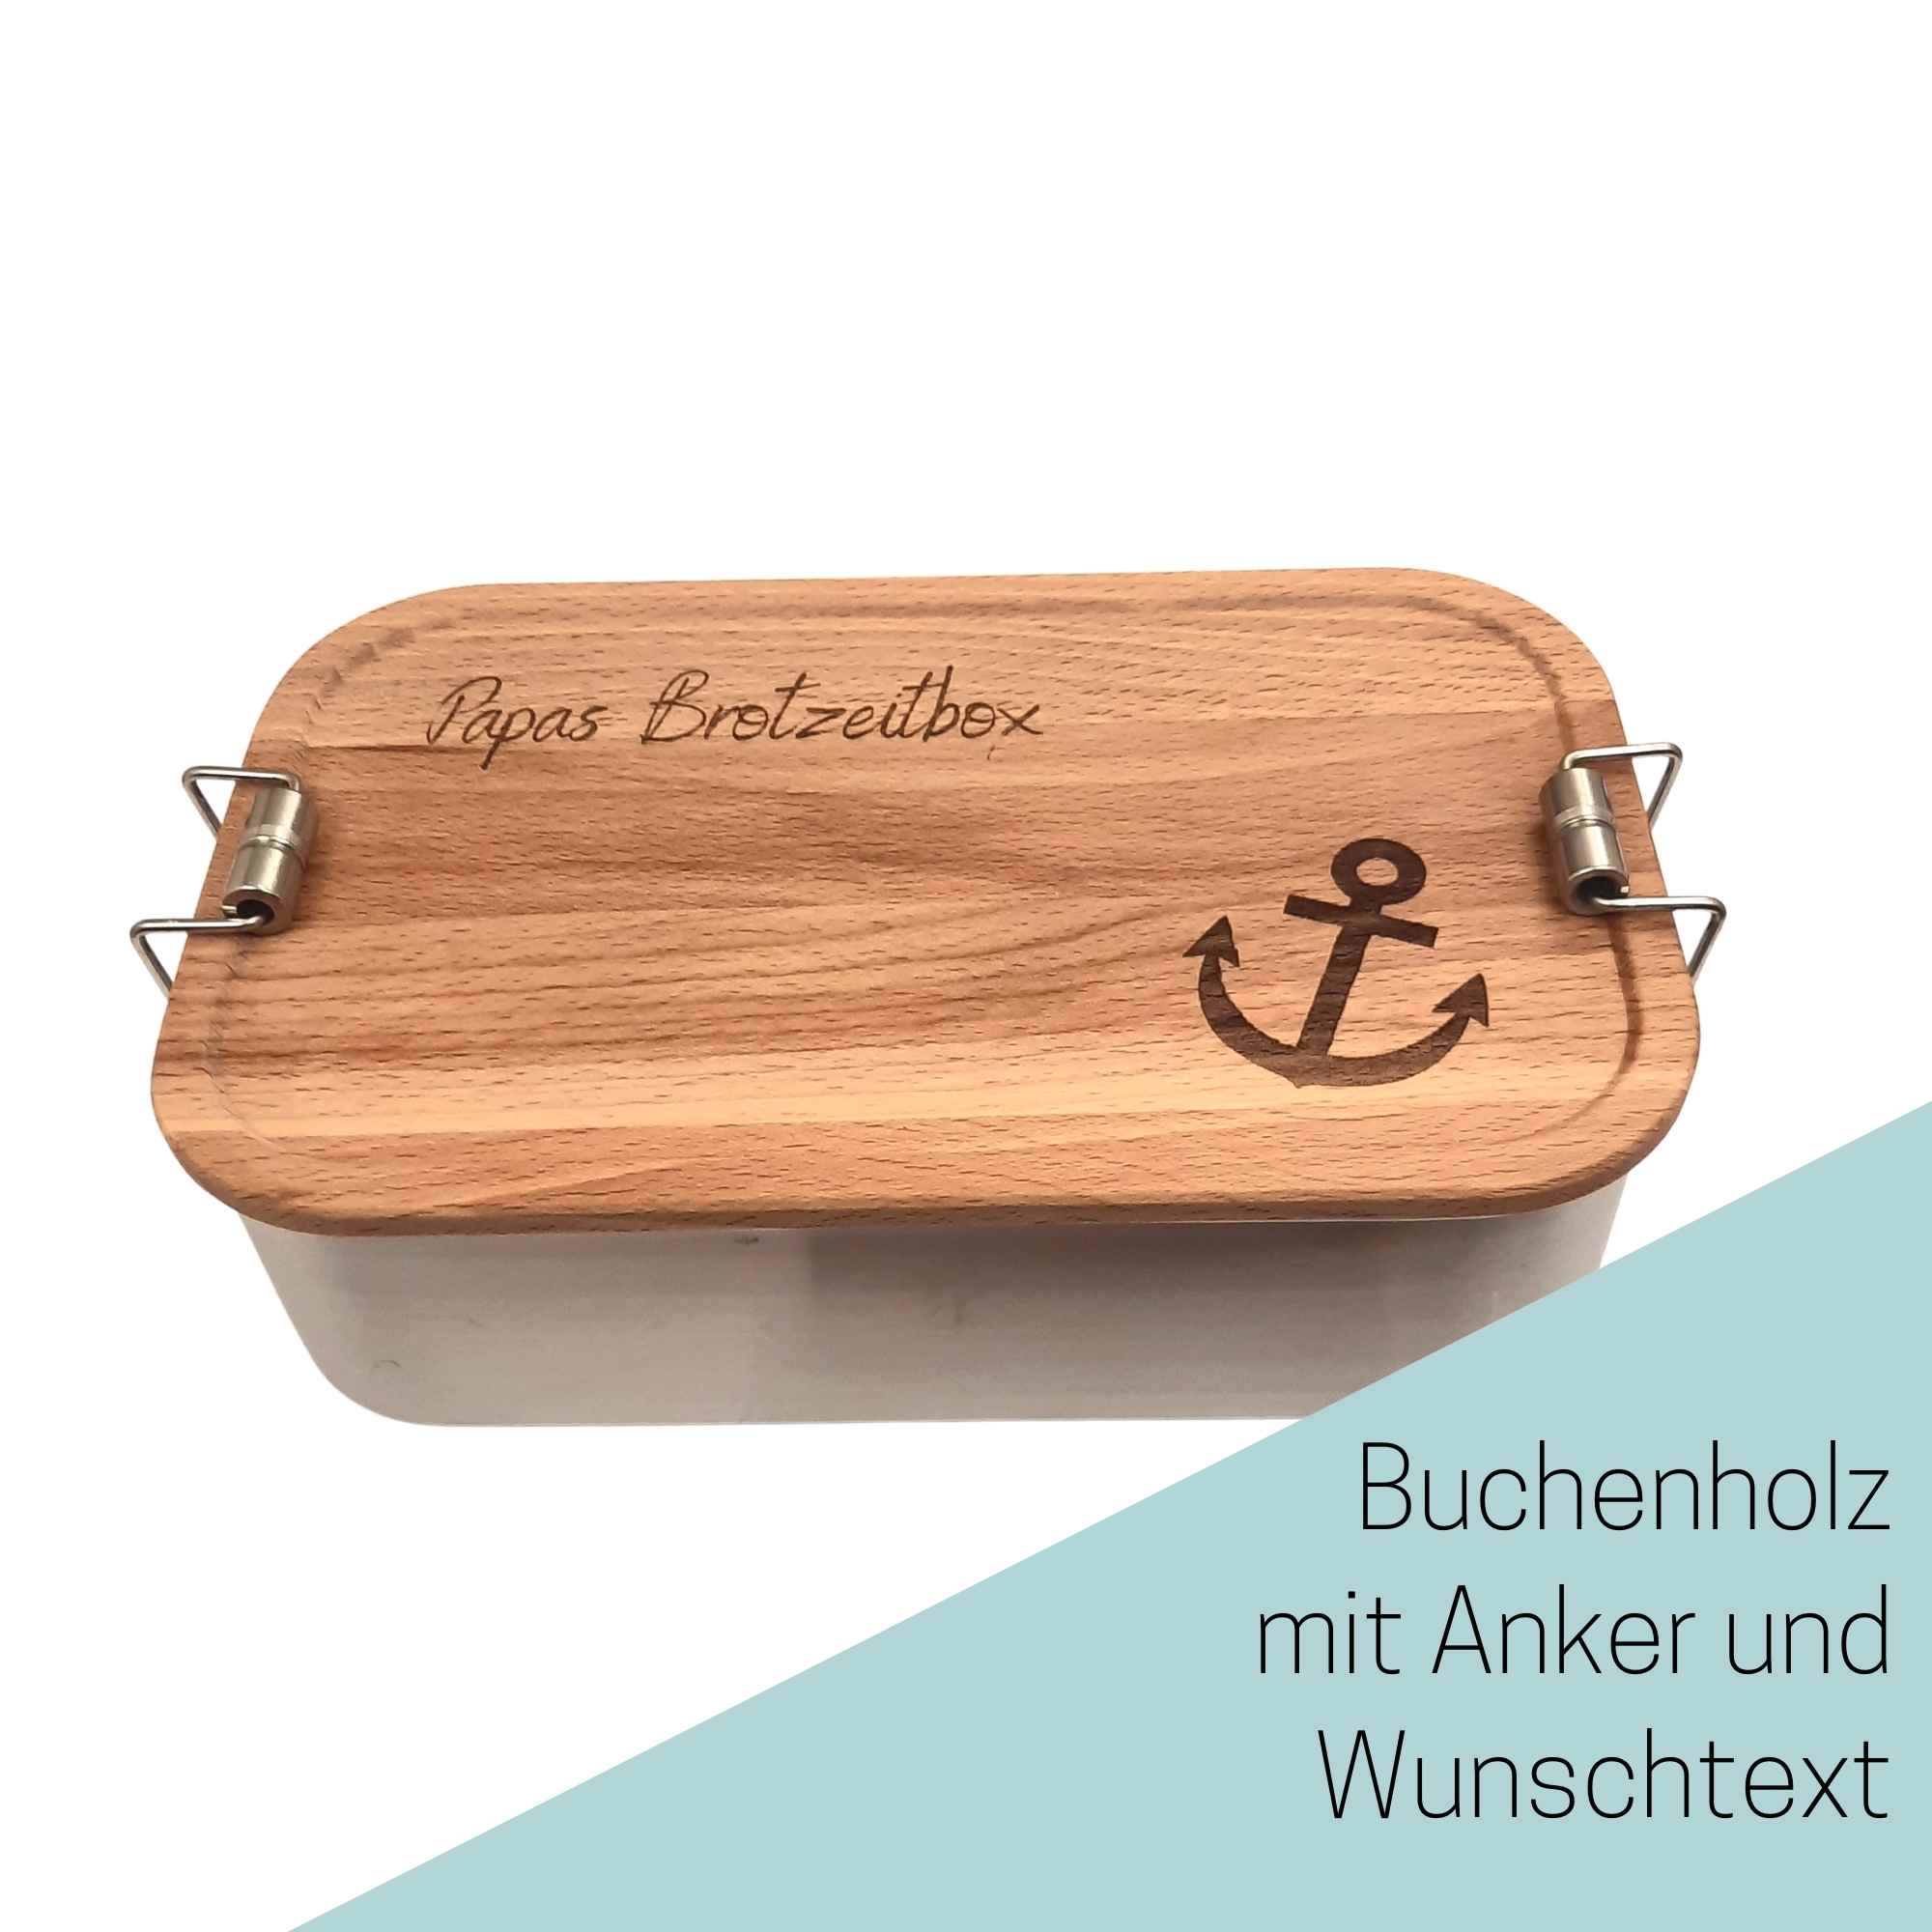 Personalisierte Anker Lunchbox aus Buchenholz und Edelstahl